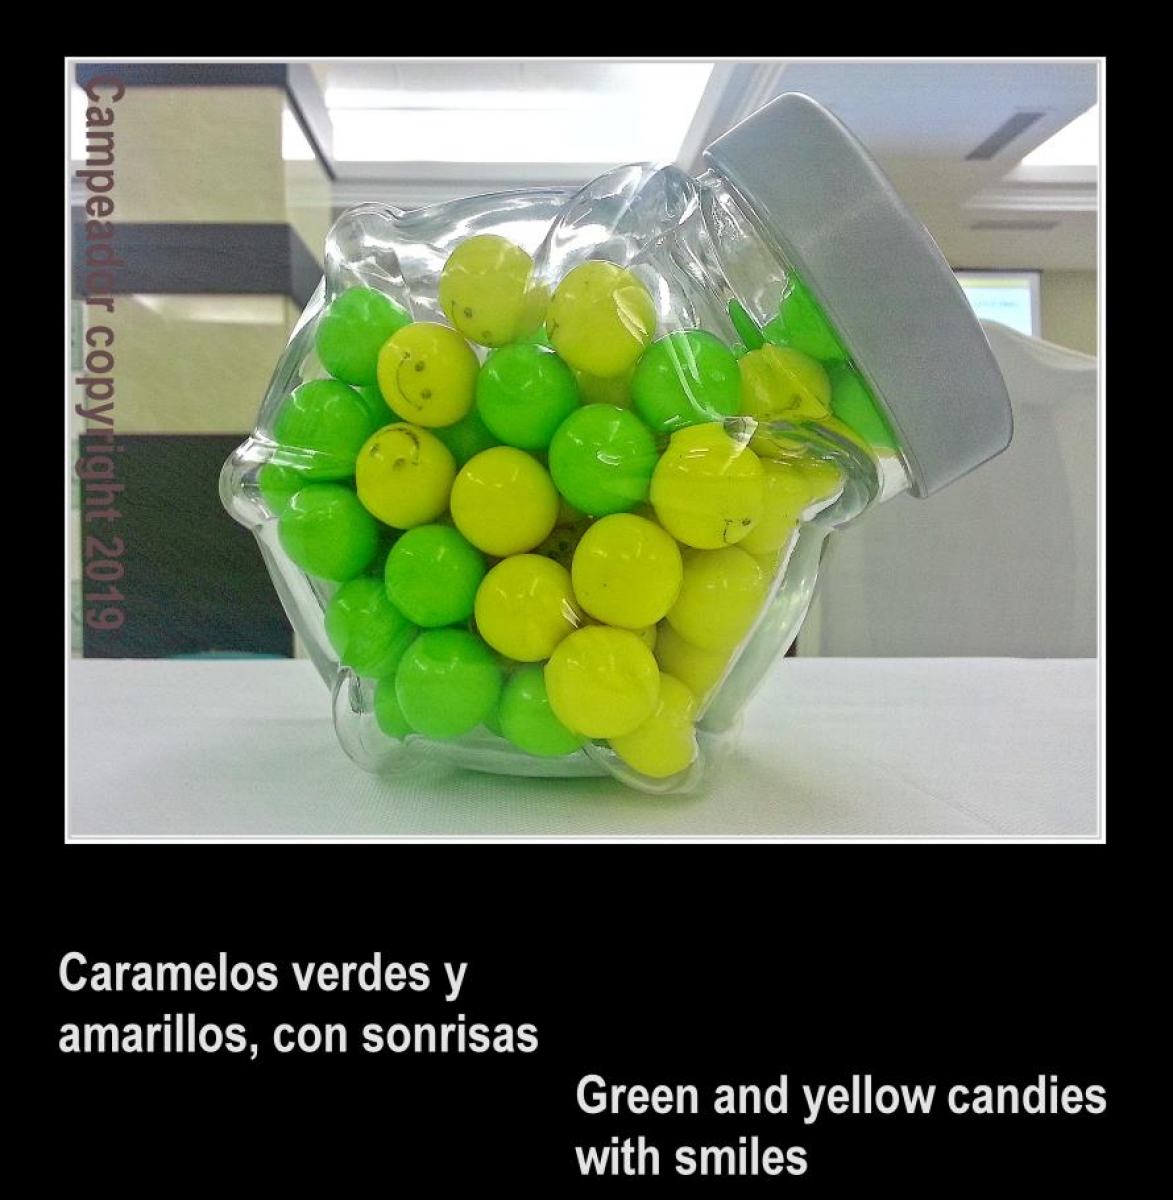 Caramelos verdes y amarillos, con sonrisas - Green and yellow candies with smiles. Photo by Campeador.